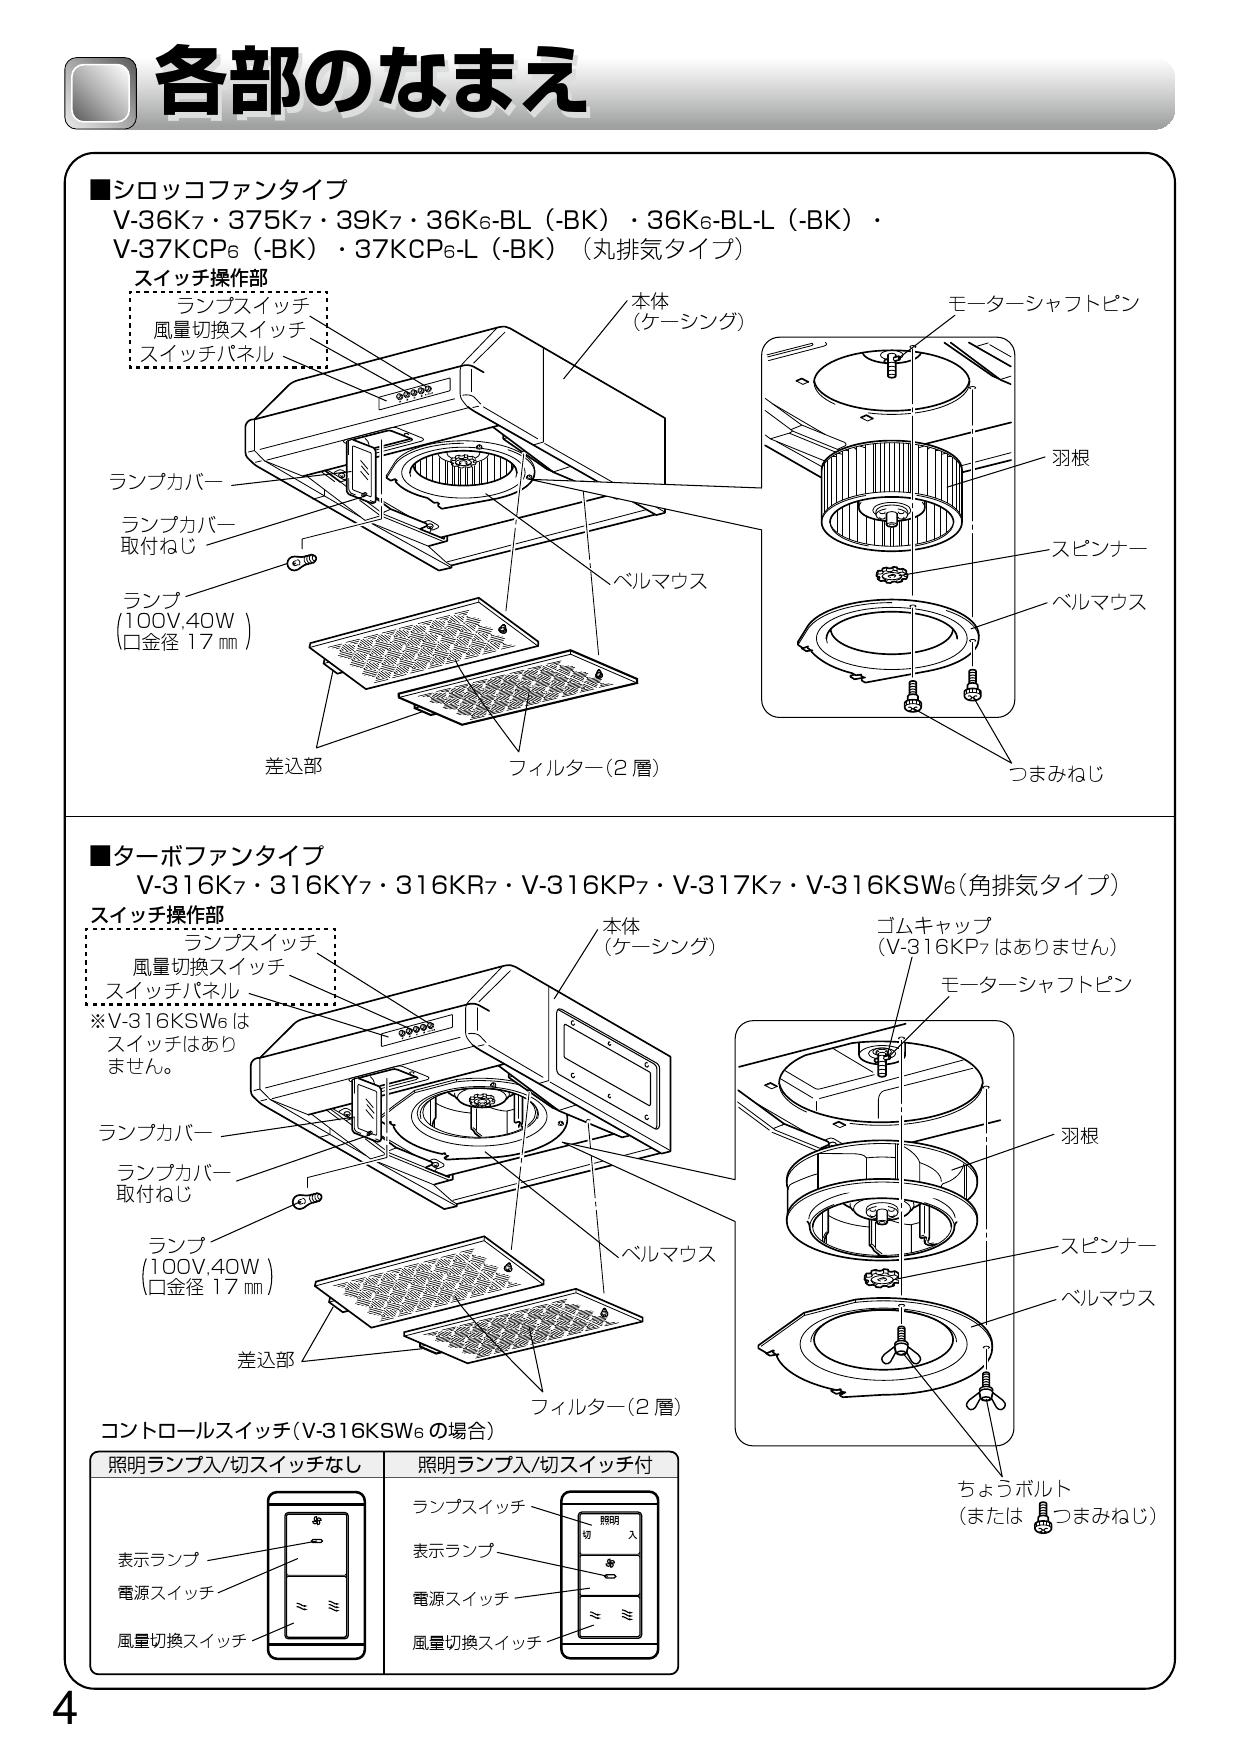 三菱 レンジフードファン 浅形 高静圧・丸排気タイプ(75cm 幅) V-375K6後継機種 MITSUBISHI - 2